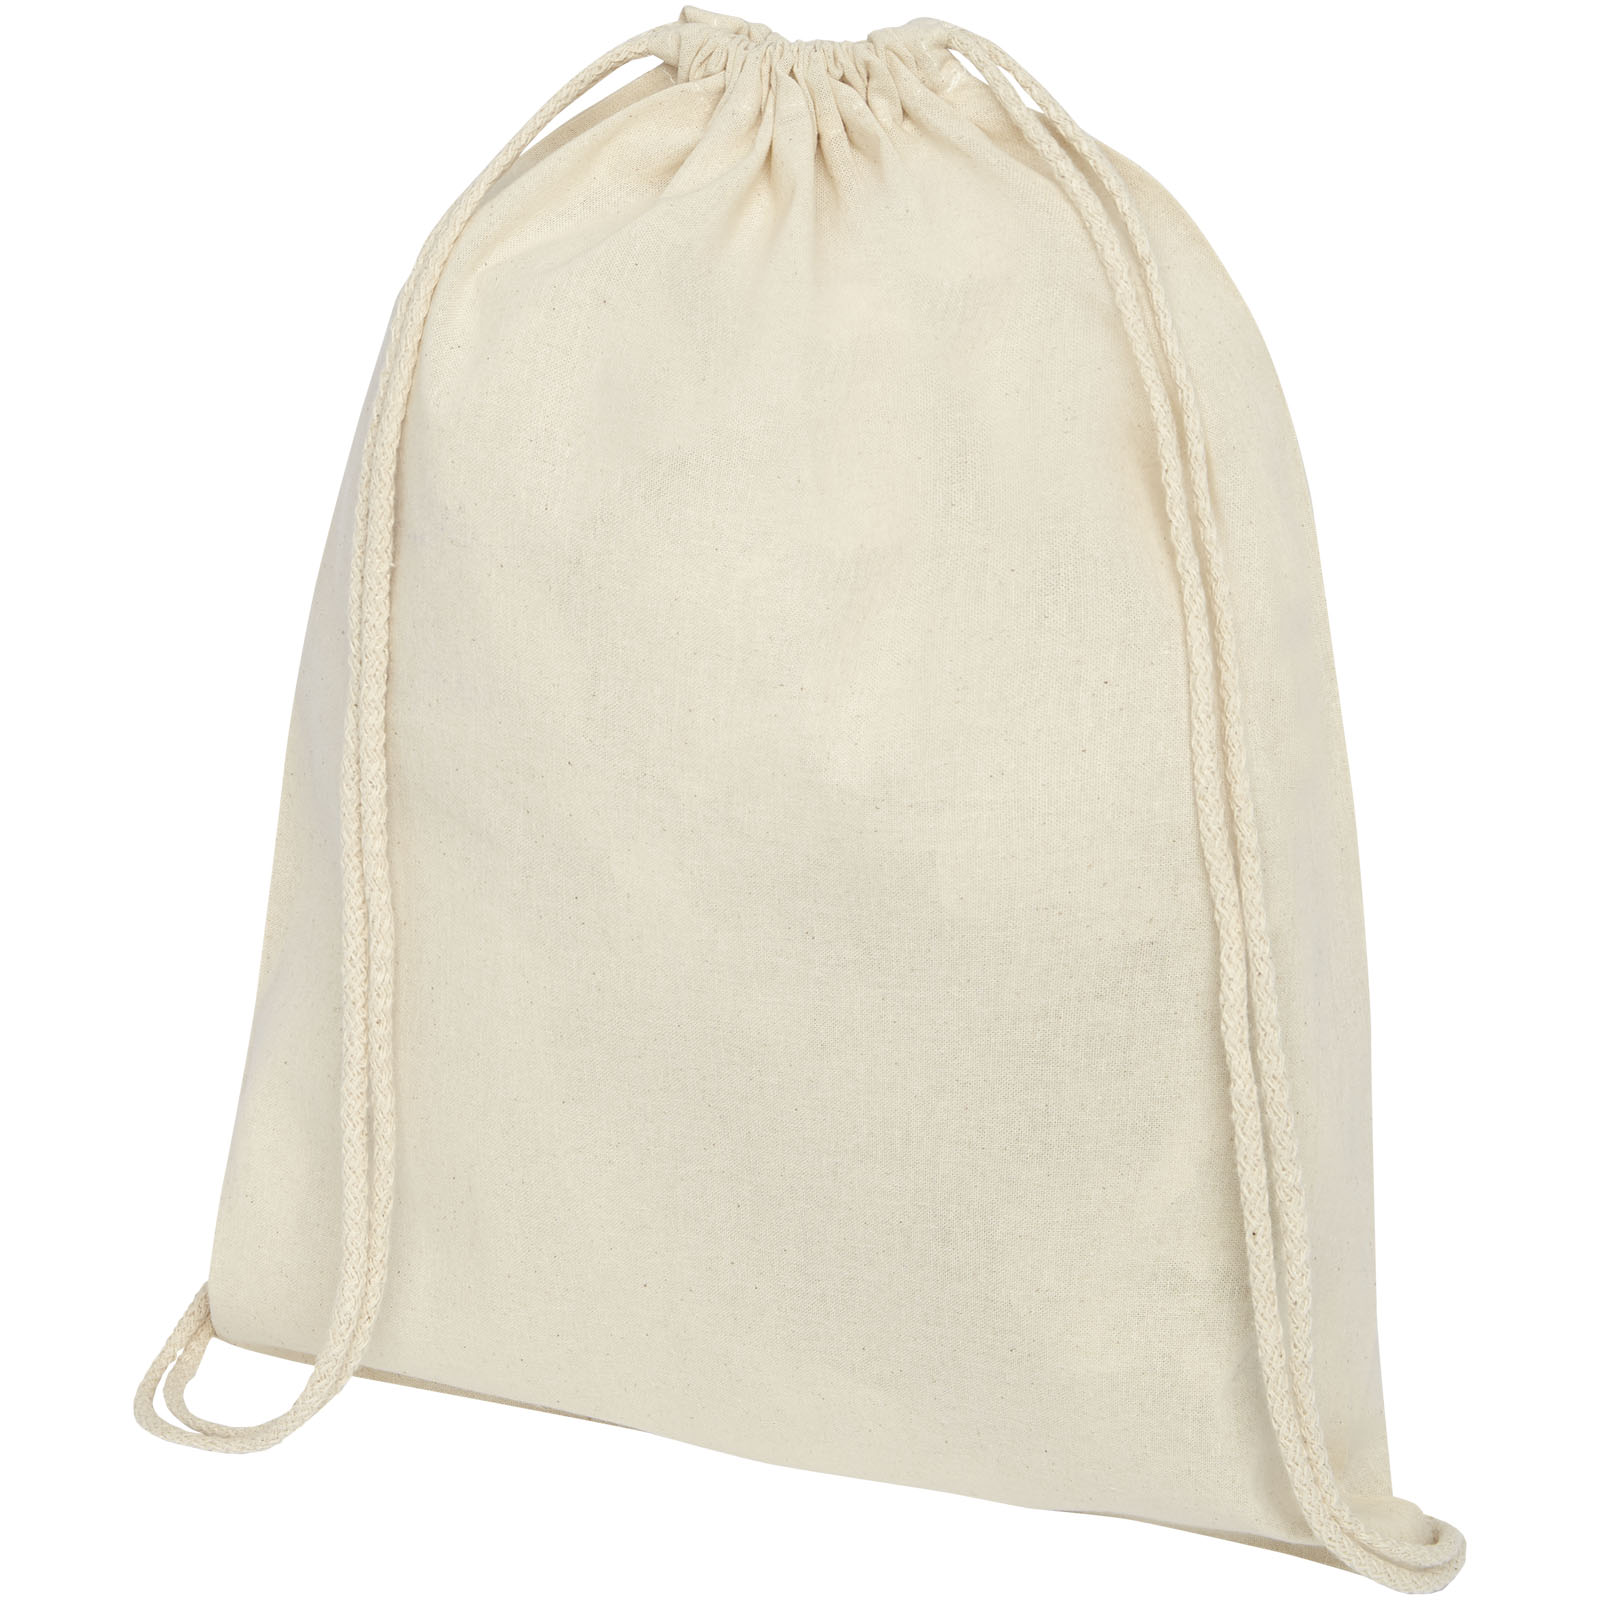 Advertising Drawstring Bags - Oregon 100 g/m² cotton drawstring bag 5L - 0